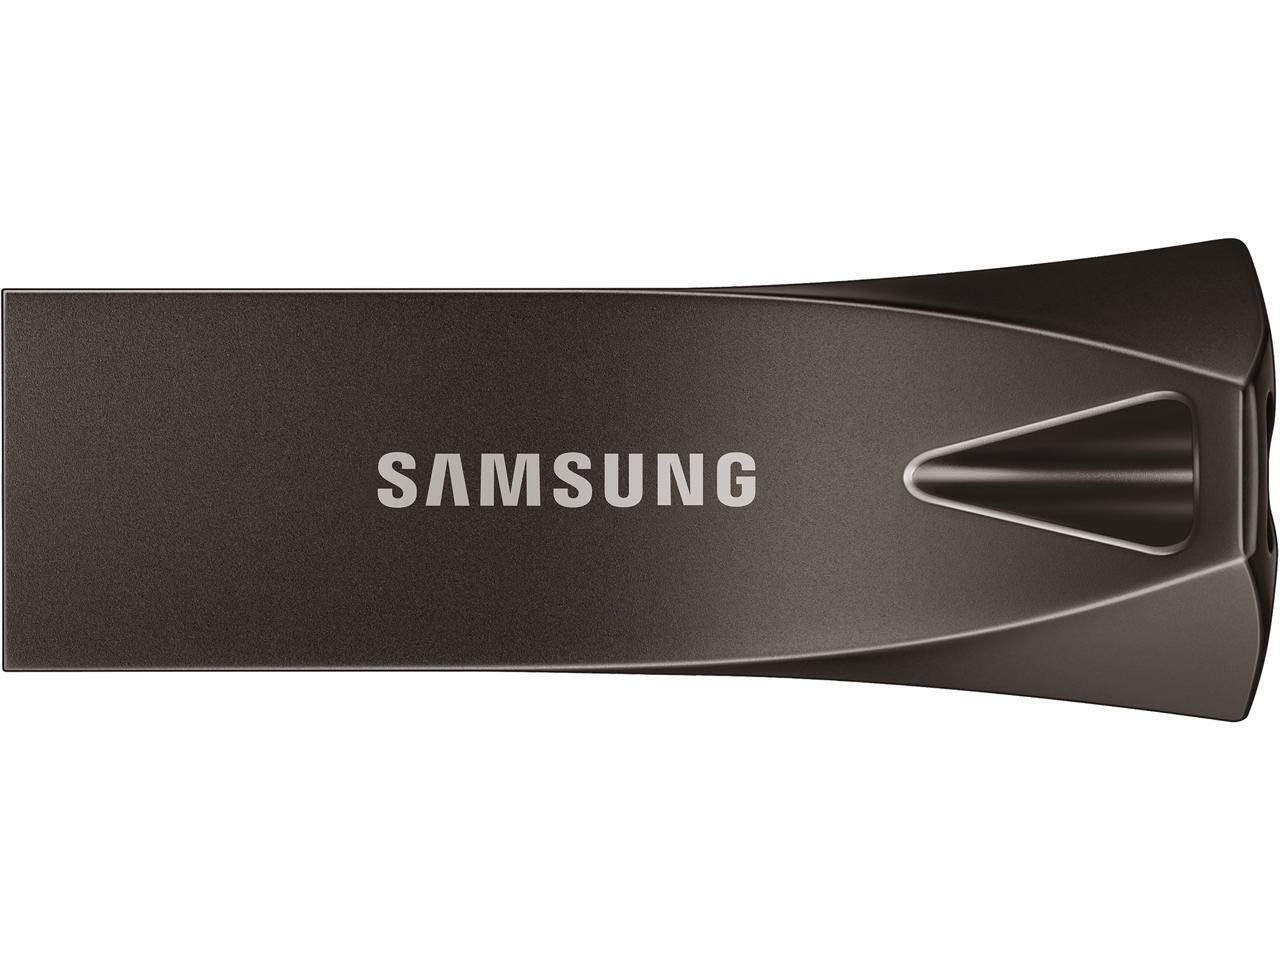 SAMSUNG BAR Plus USB 3.1 Flash Thumb Jump Drive USB Stick in Gunmetal Titan Gray